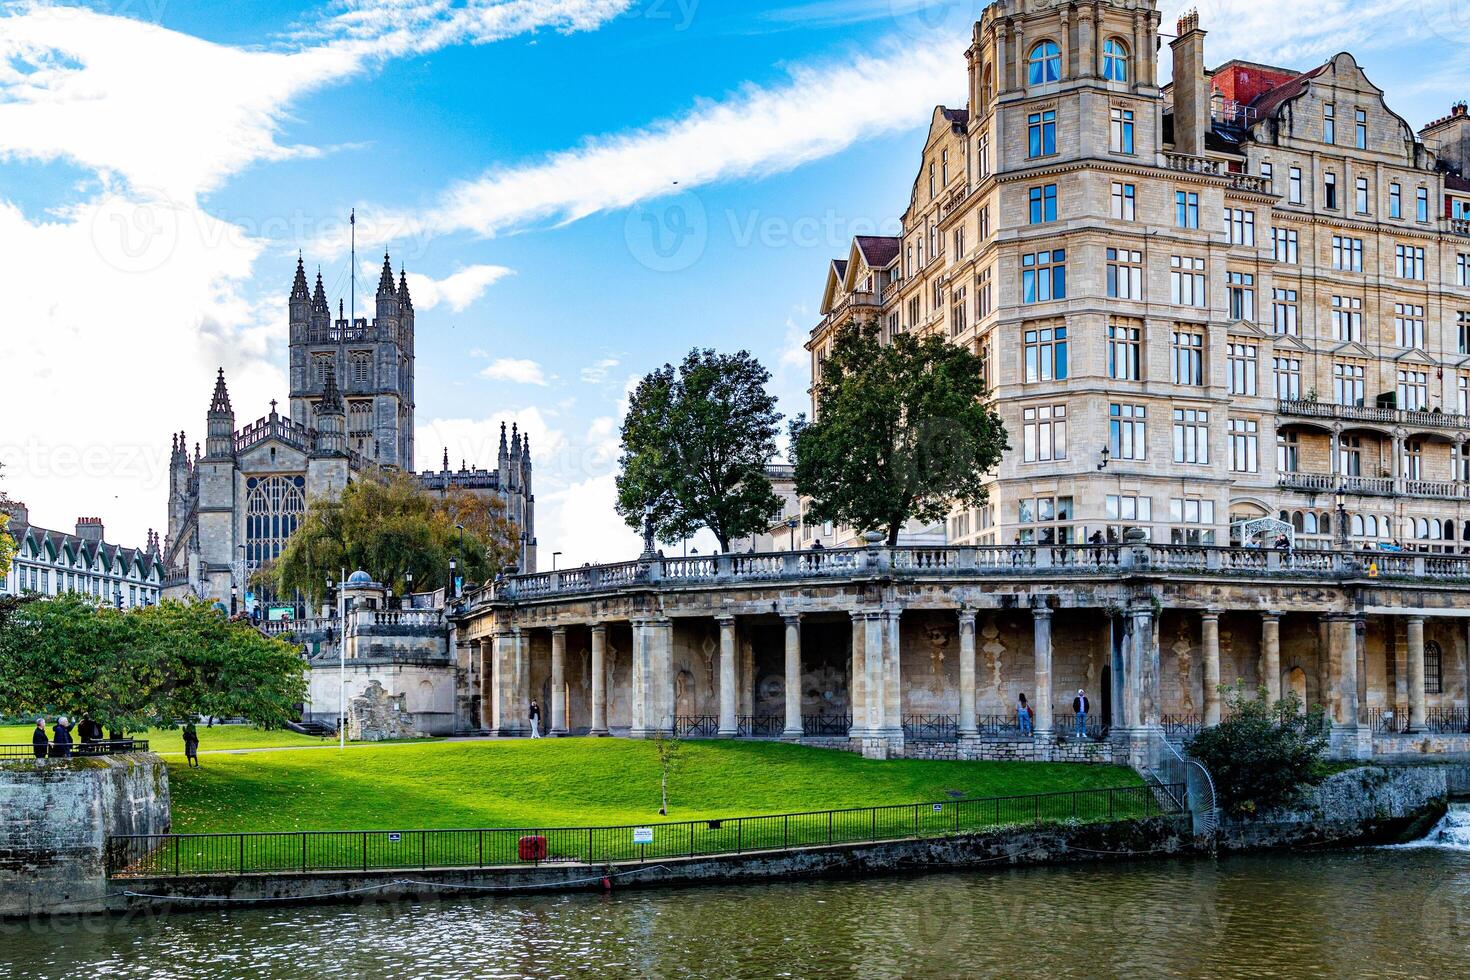 historisch Europese stadsgezicht met een kathedraal, klassiek architectuur, en een rivierfront promenade onder een blauw lucht in bad, Engeland. foto